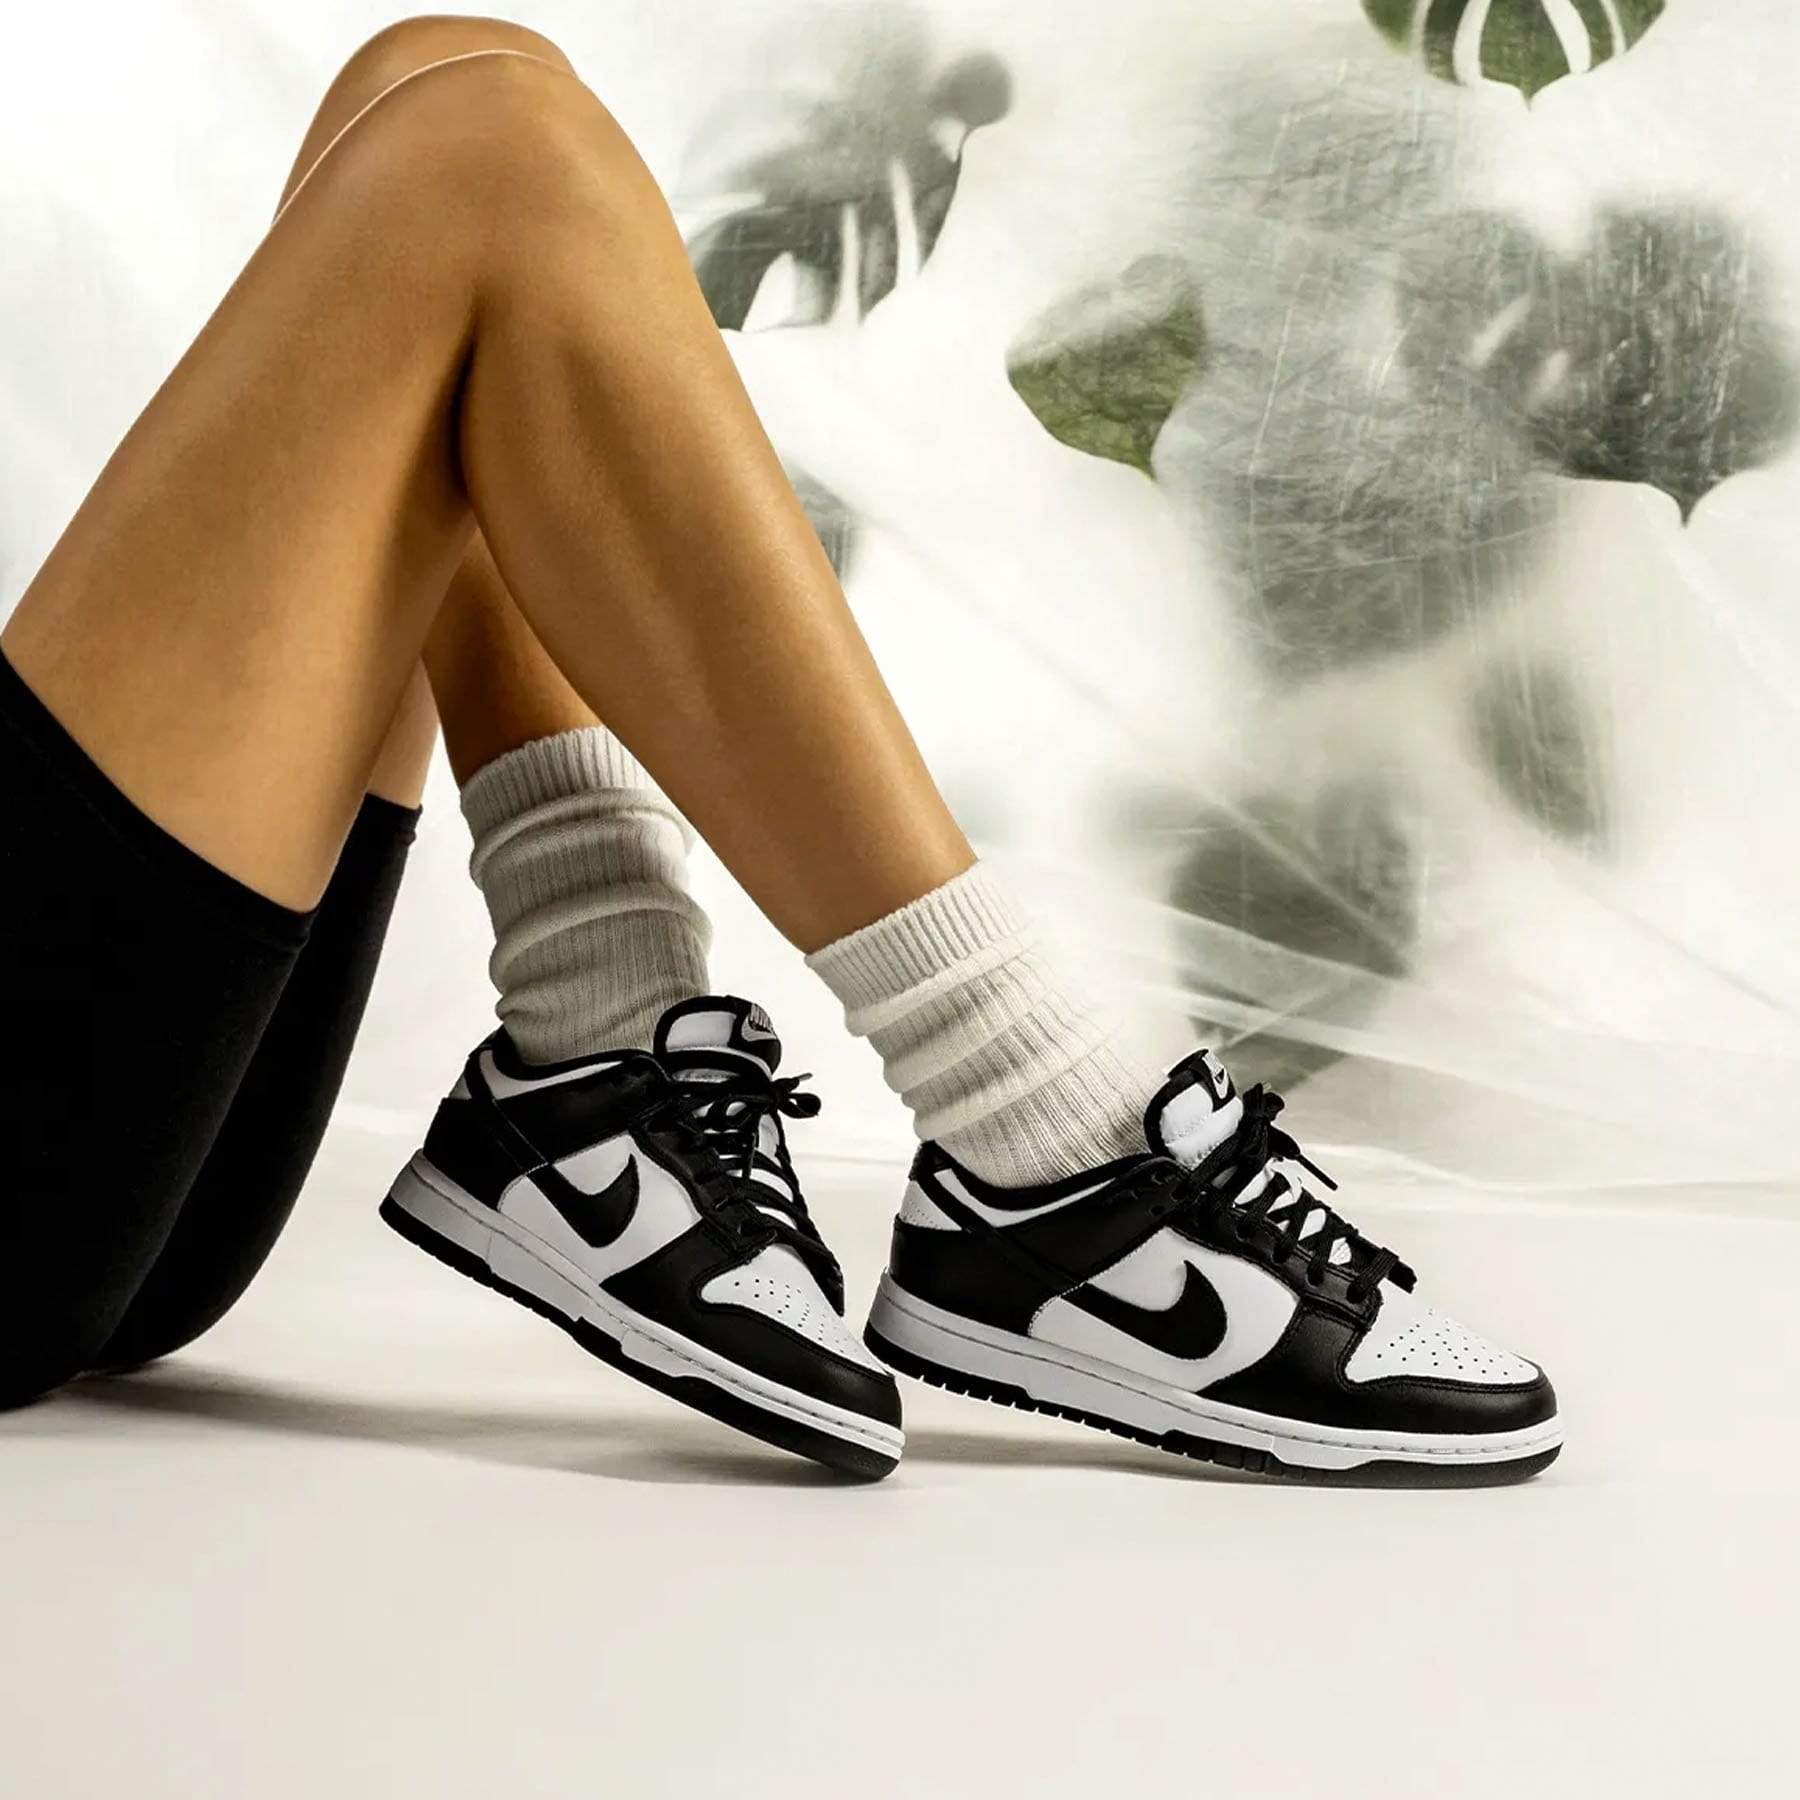 うのにもお得な情報満載 Nike WMNS Dunk Low White/Black - 靴